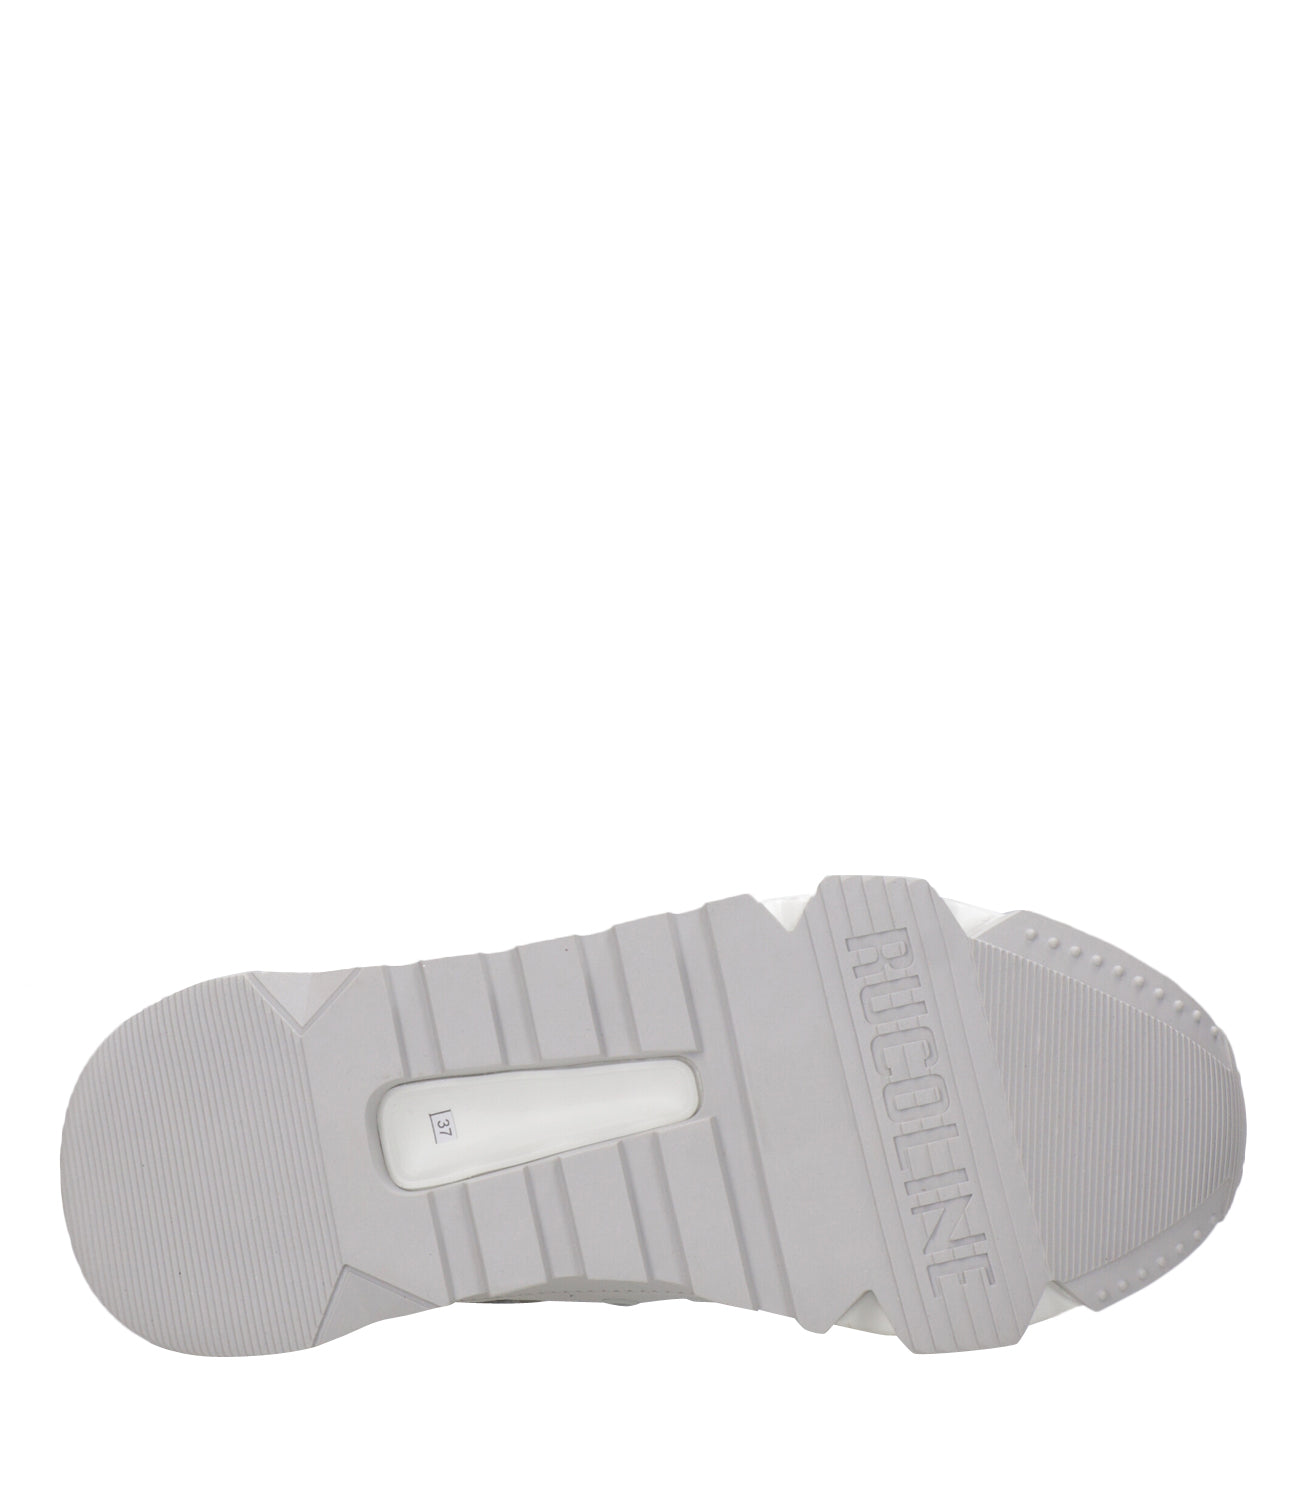 Rucoline | Sneakers Aki 304 Soft Bianco e Argento